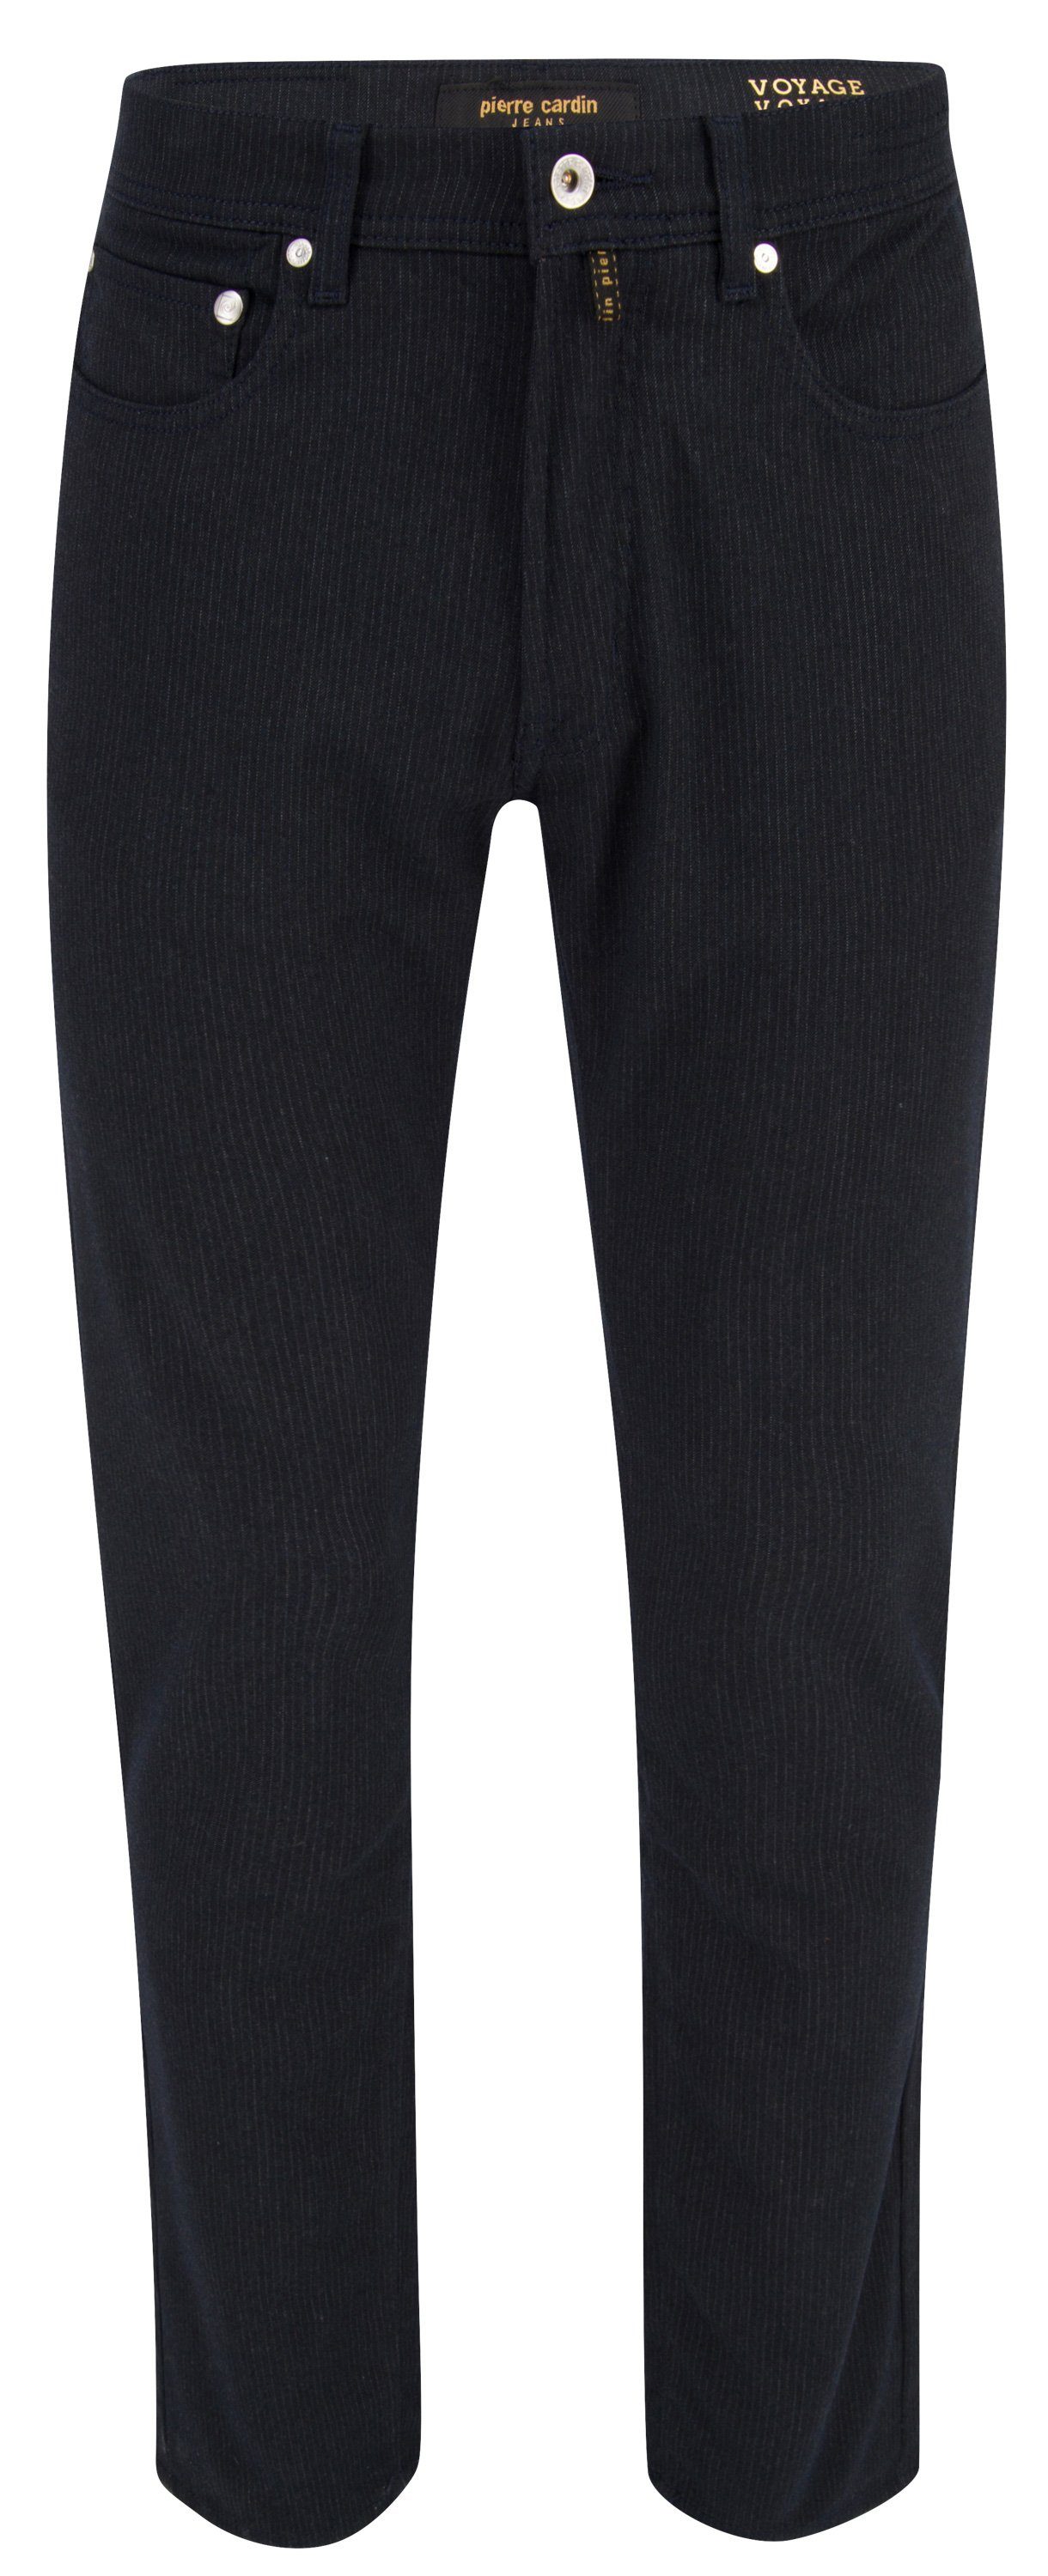 Pierre Cardin 5-Pocket-Jeans PIERRE CARDIN LYON dark grey chalk stripes 30917 4795.68 - VOYAGE